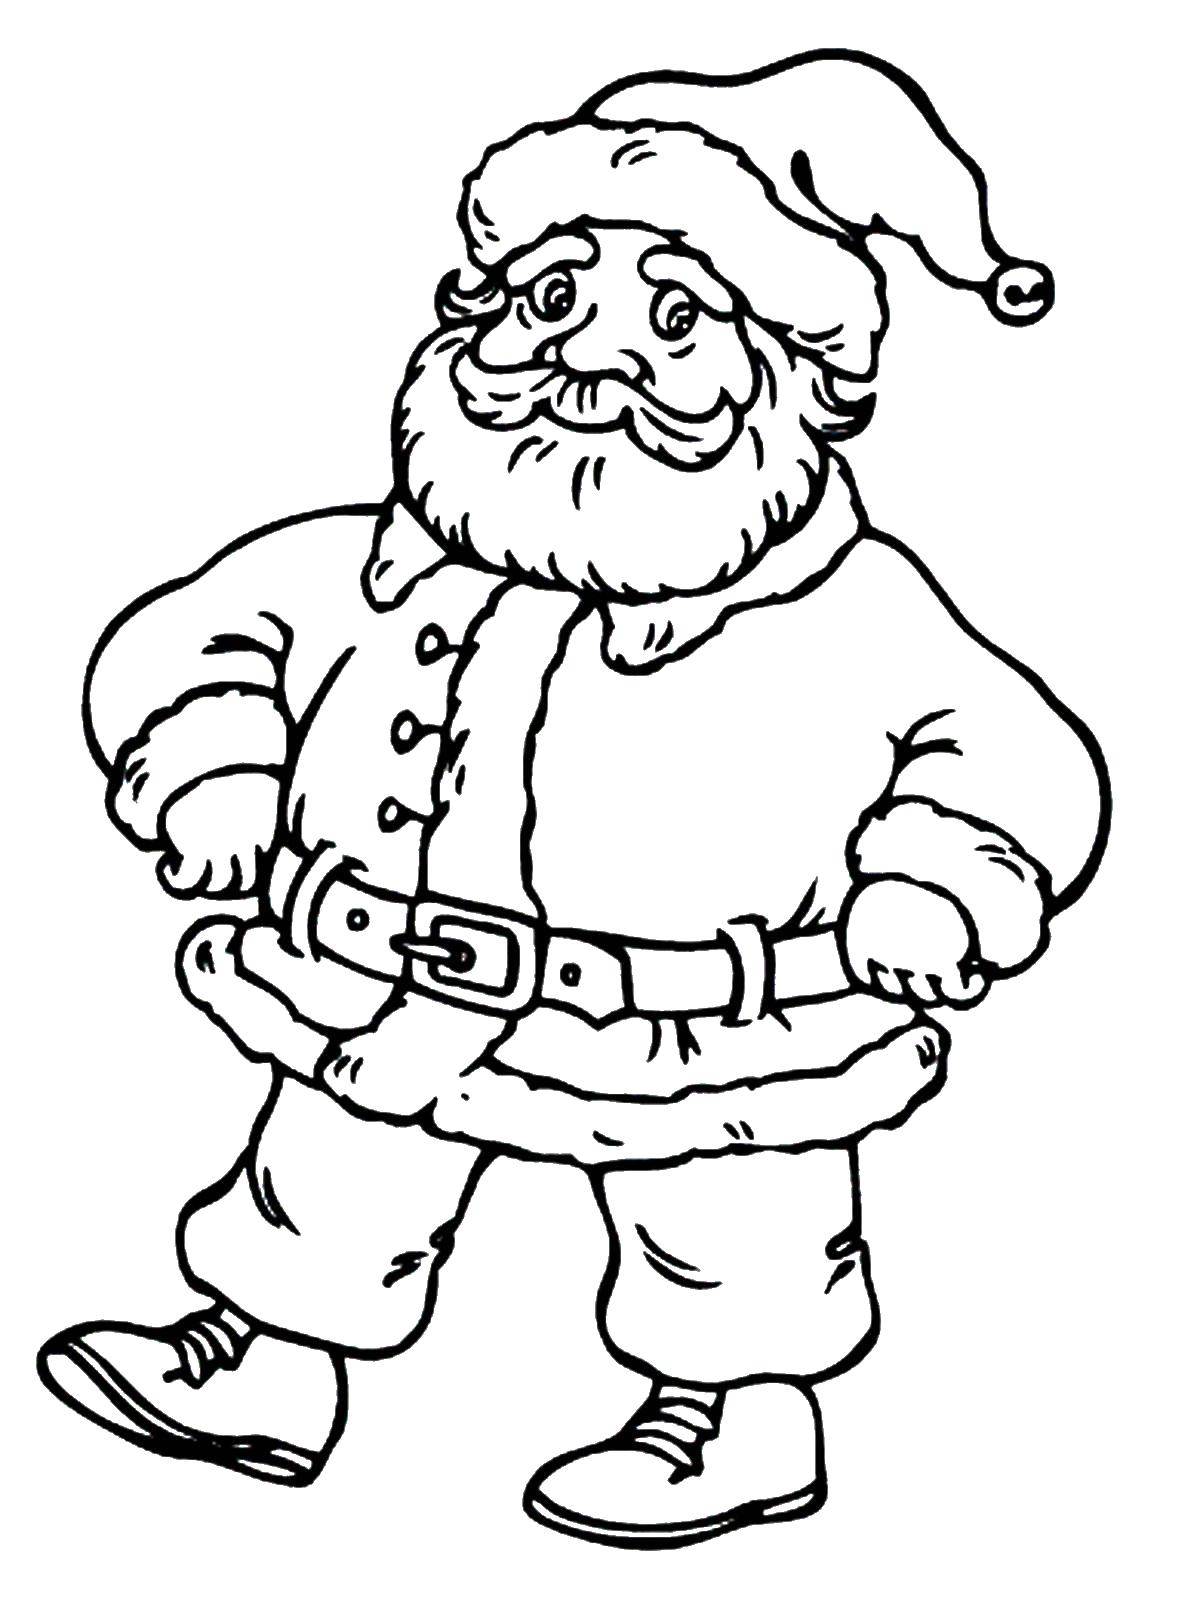 Название: Раскраска Санта клаус. Категория: дед мороз. Теги: Новый Год, Дед Мороз, Санта Клаус, подарки.